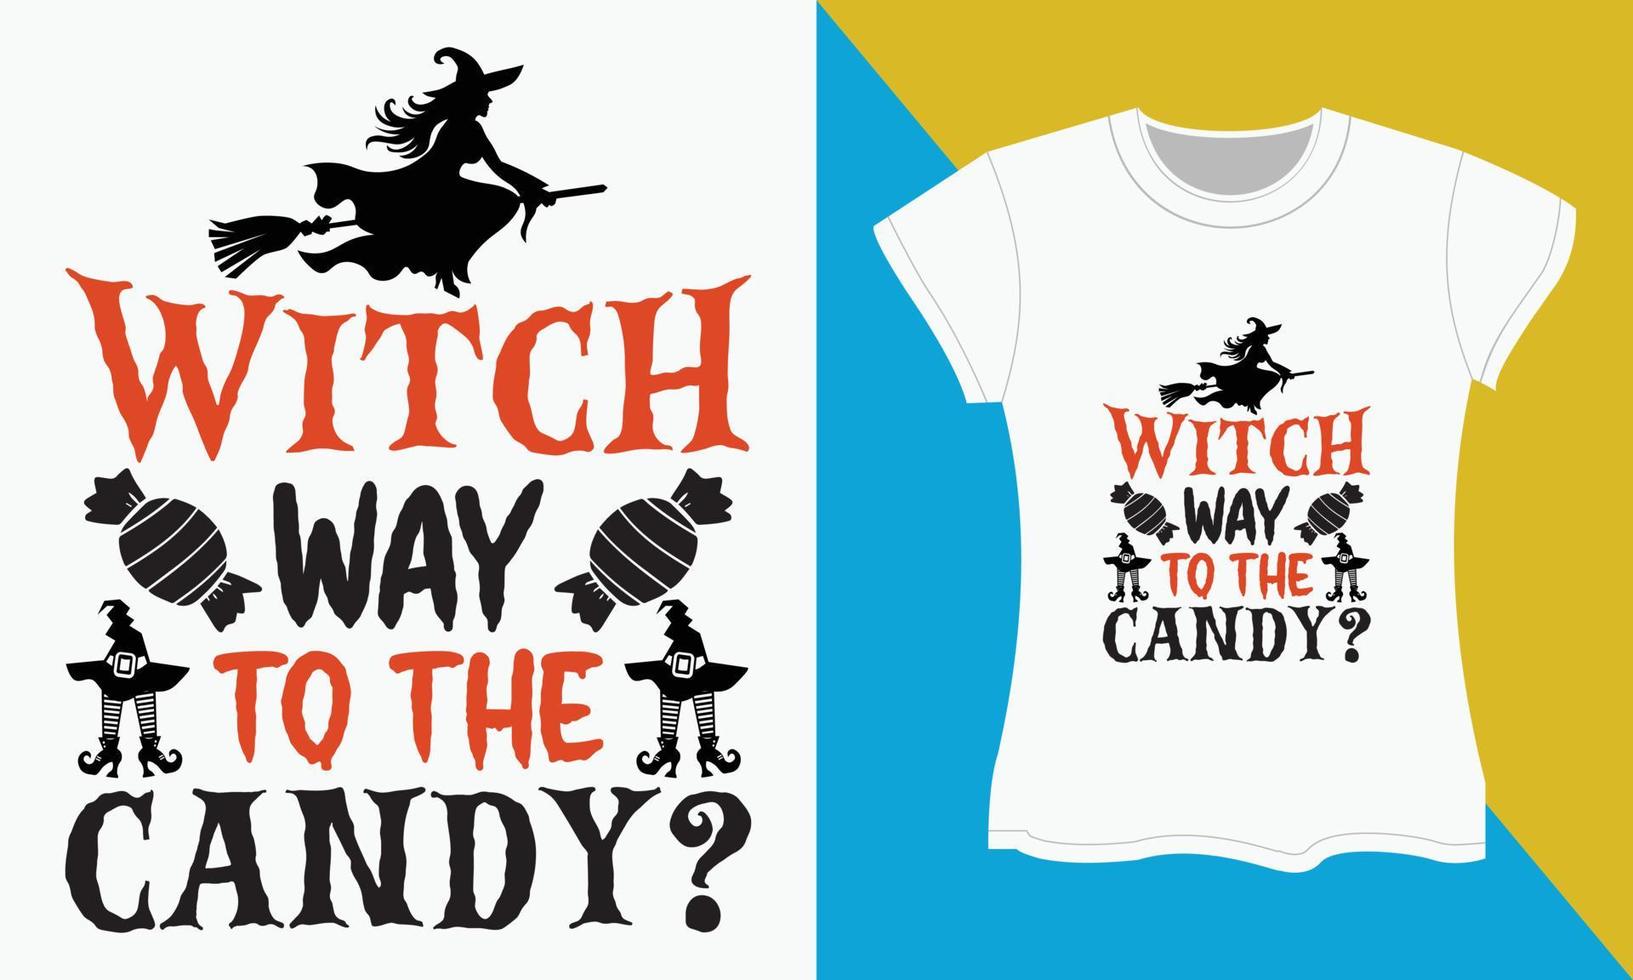 Halloween typography t-shirt Design vector